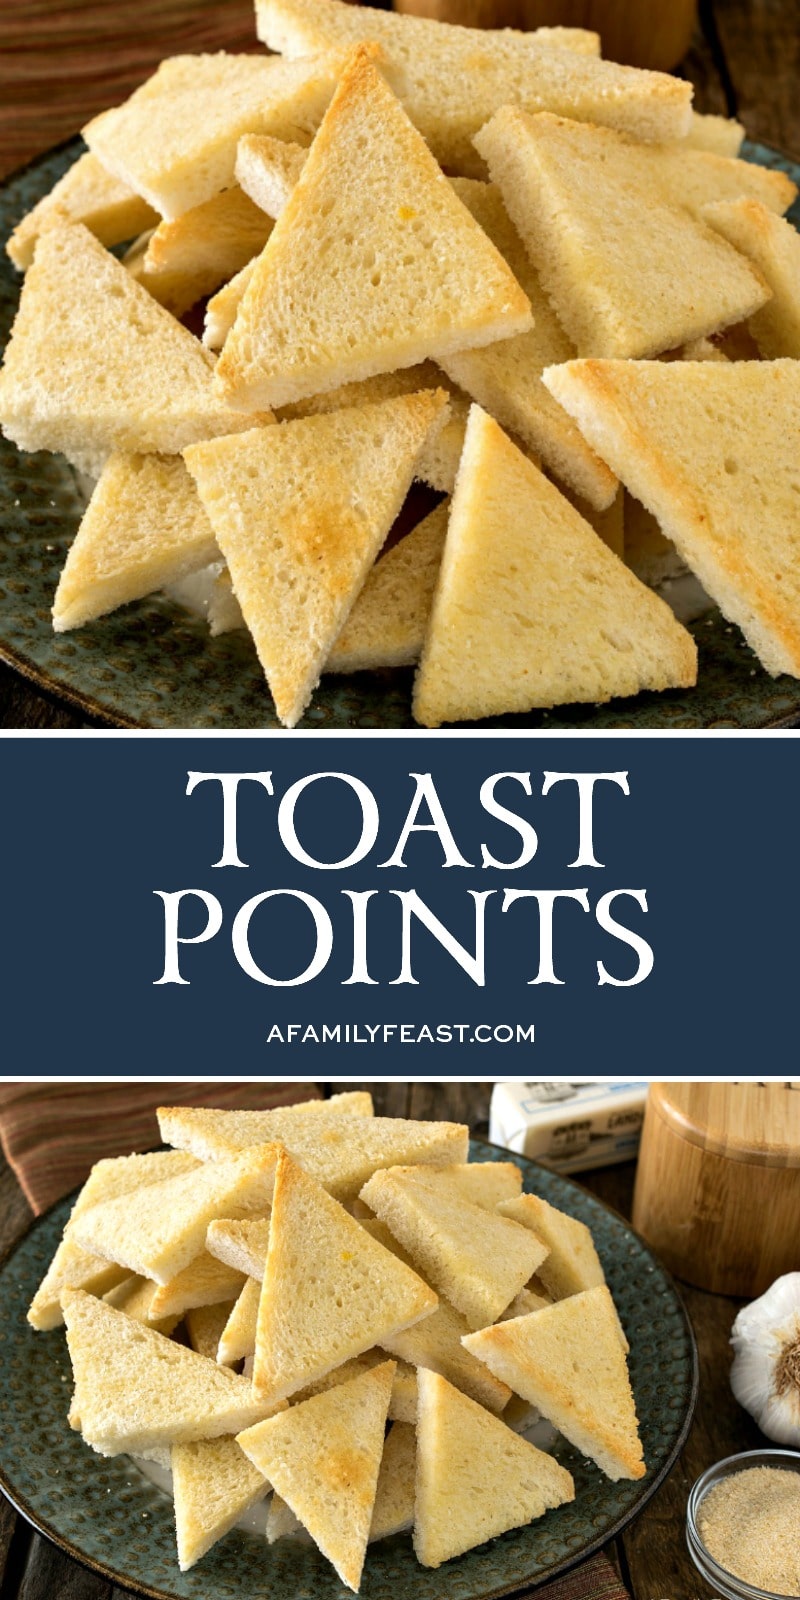 Toast Points